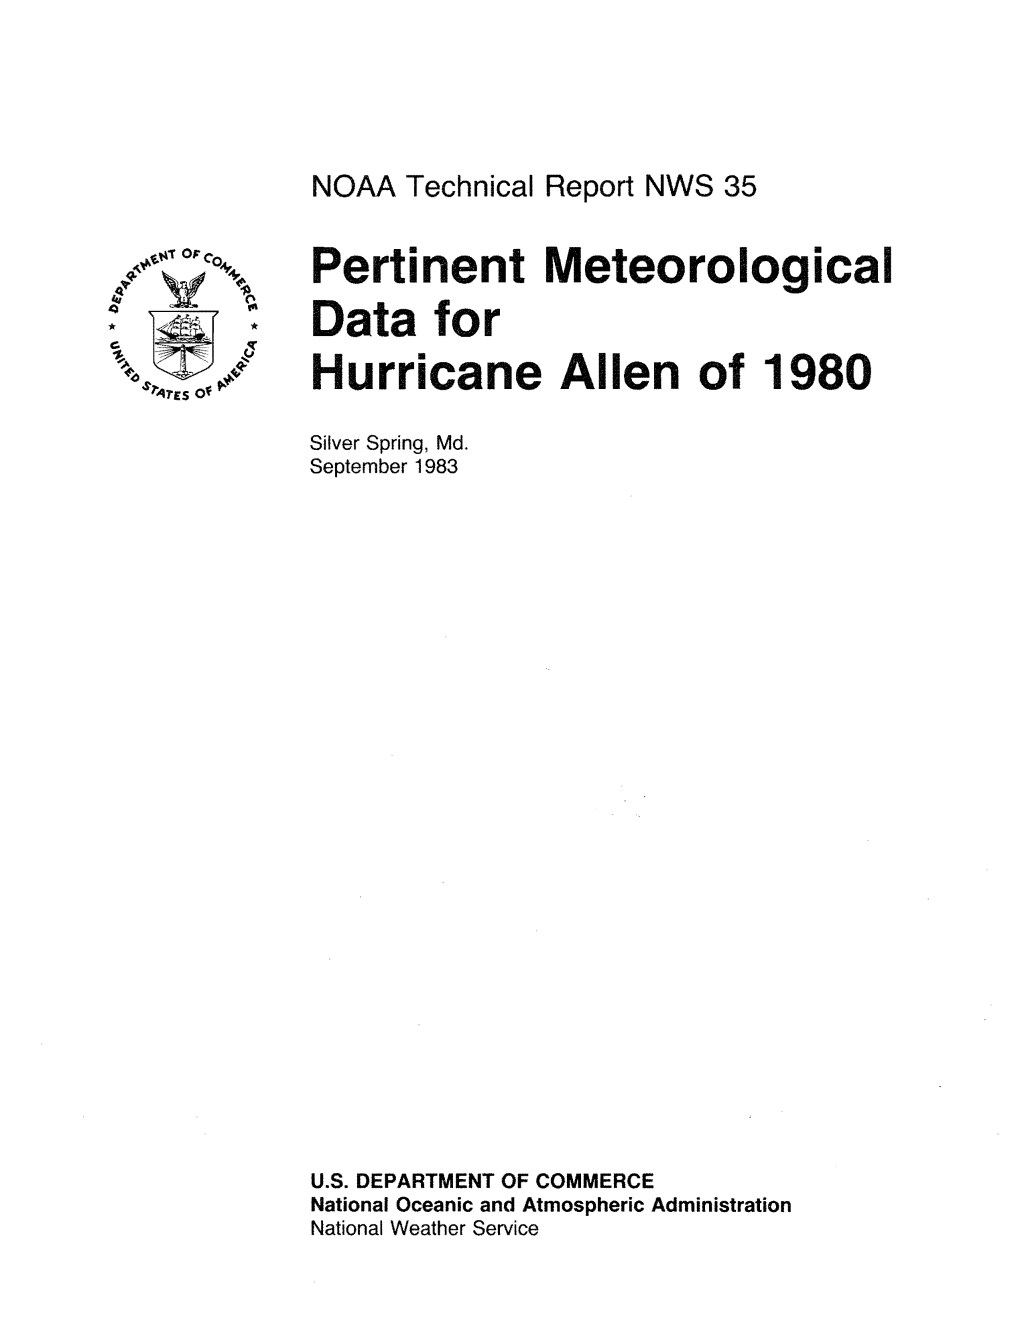 Pertinent Meteorological Data for Hurricane Allen of 1980